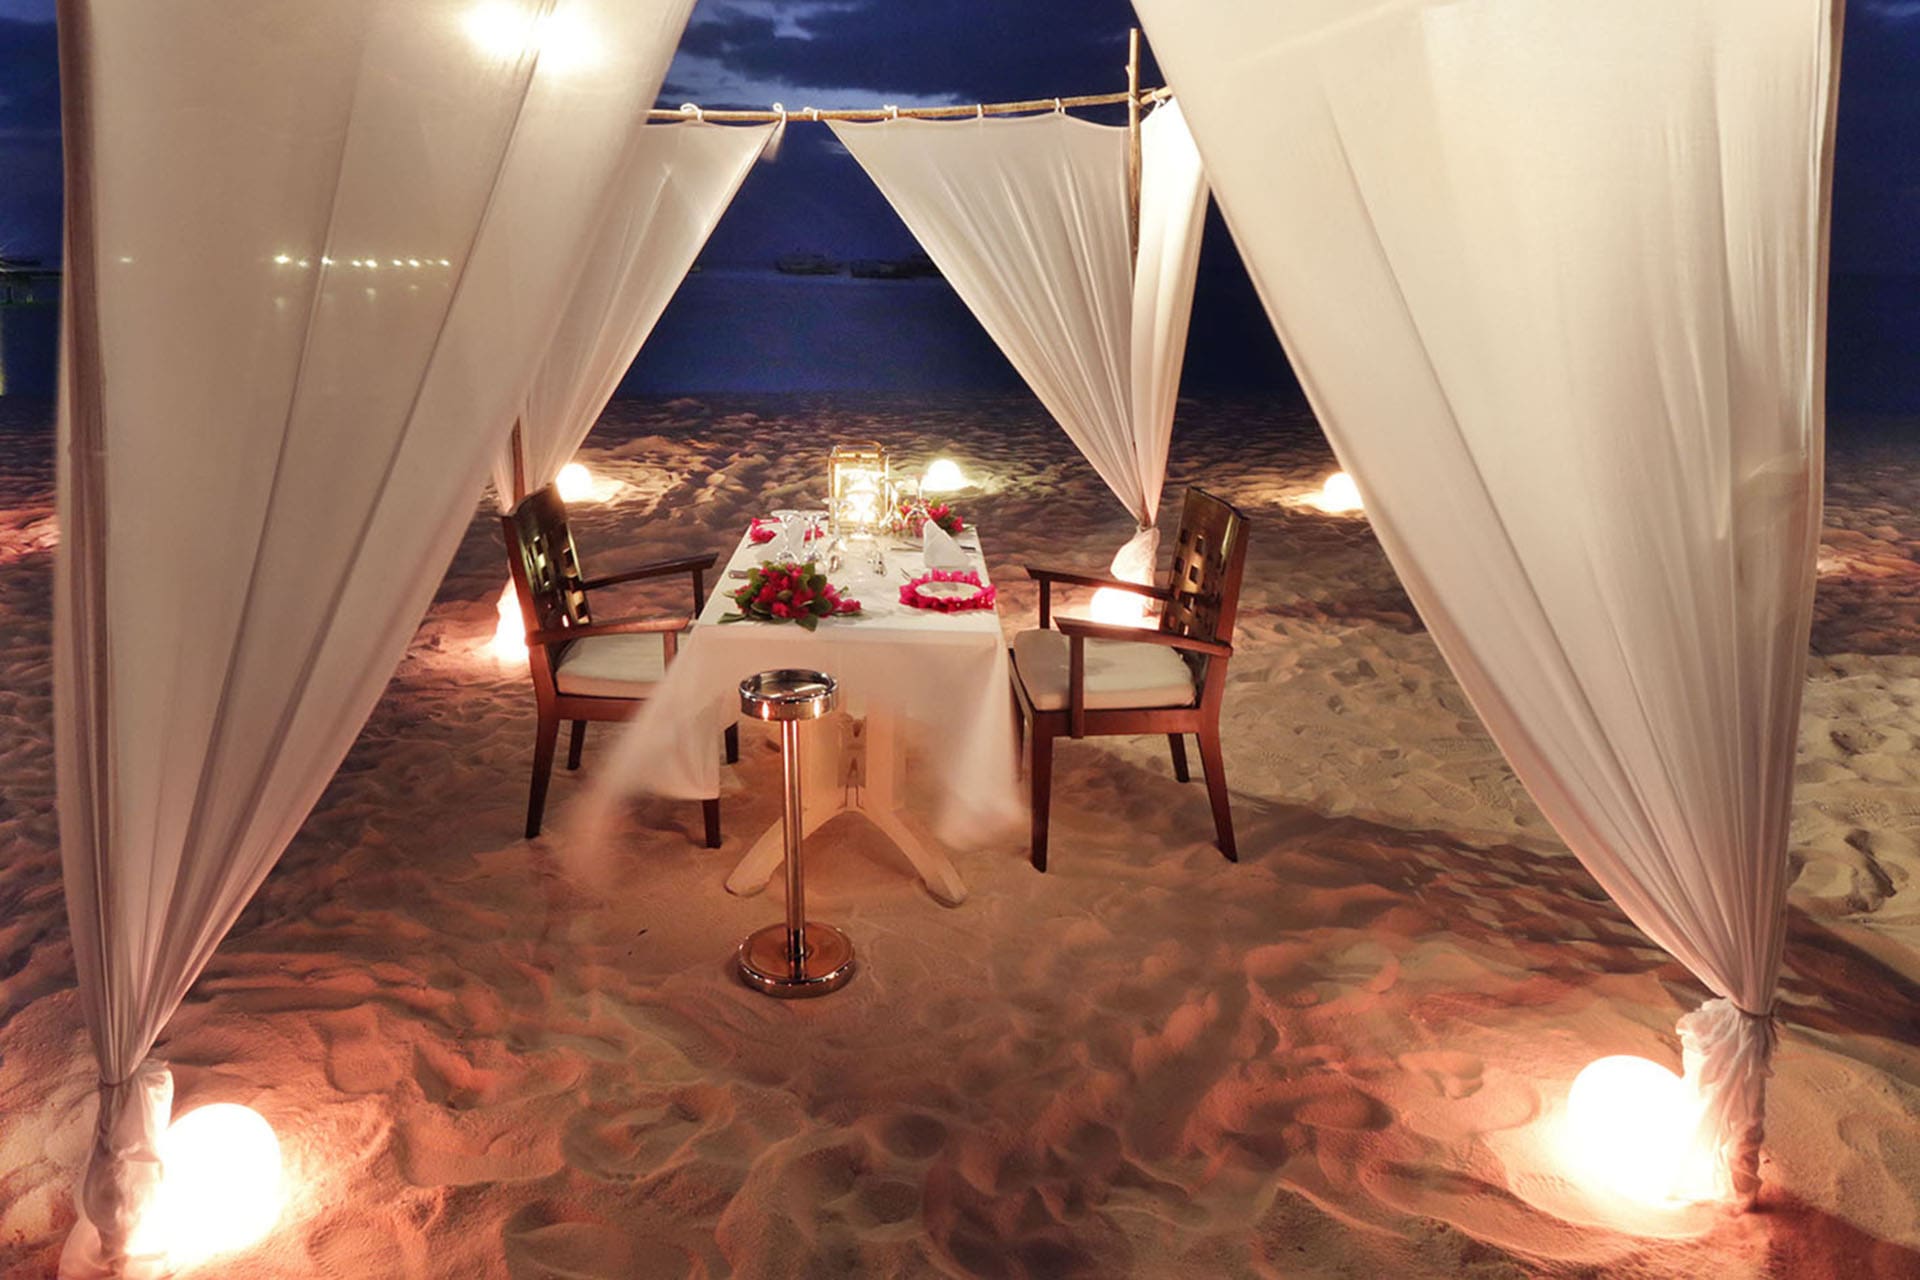 Restaurant Dining under the Stars Maldives Hotel Sandies Bathala